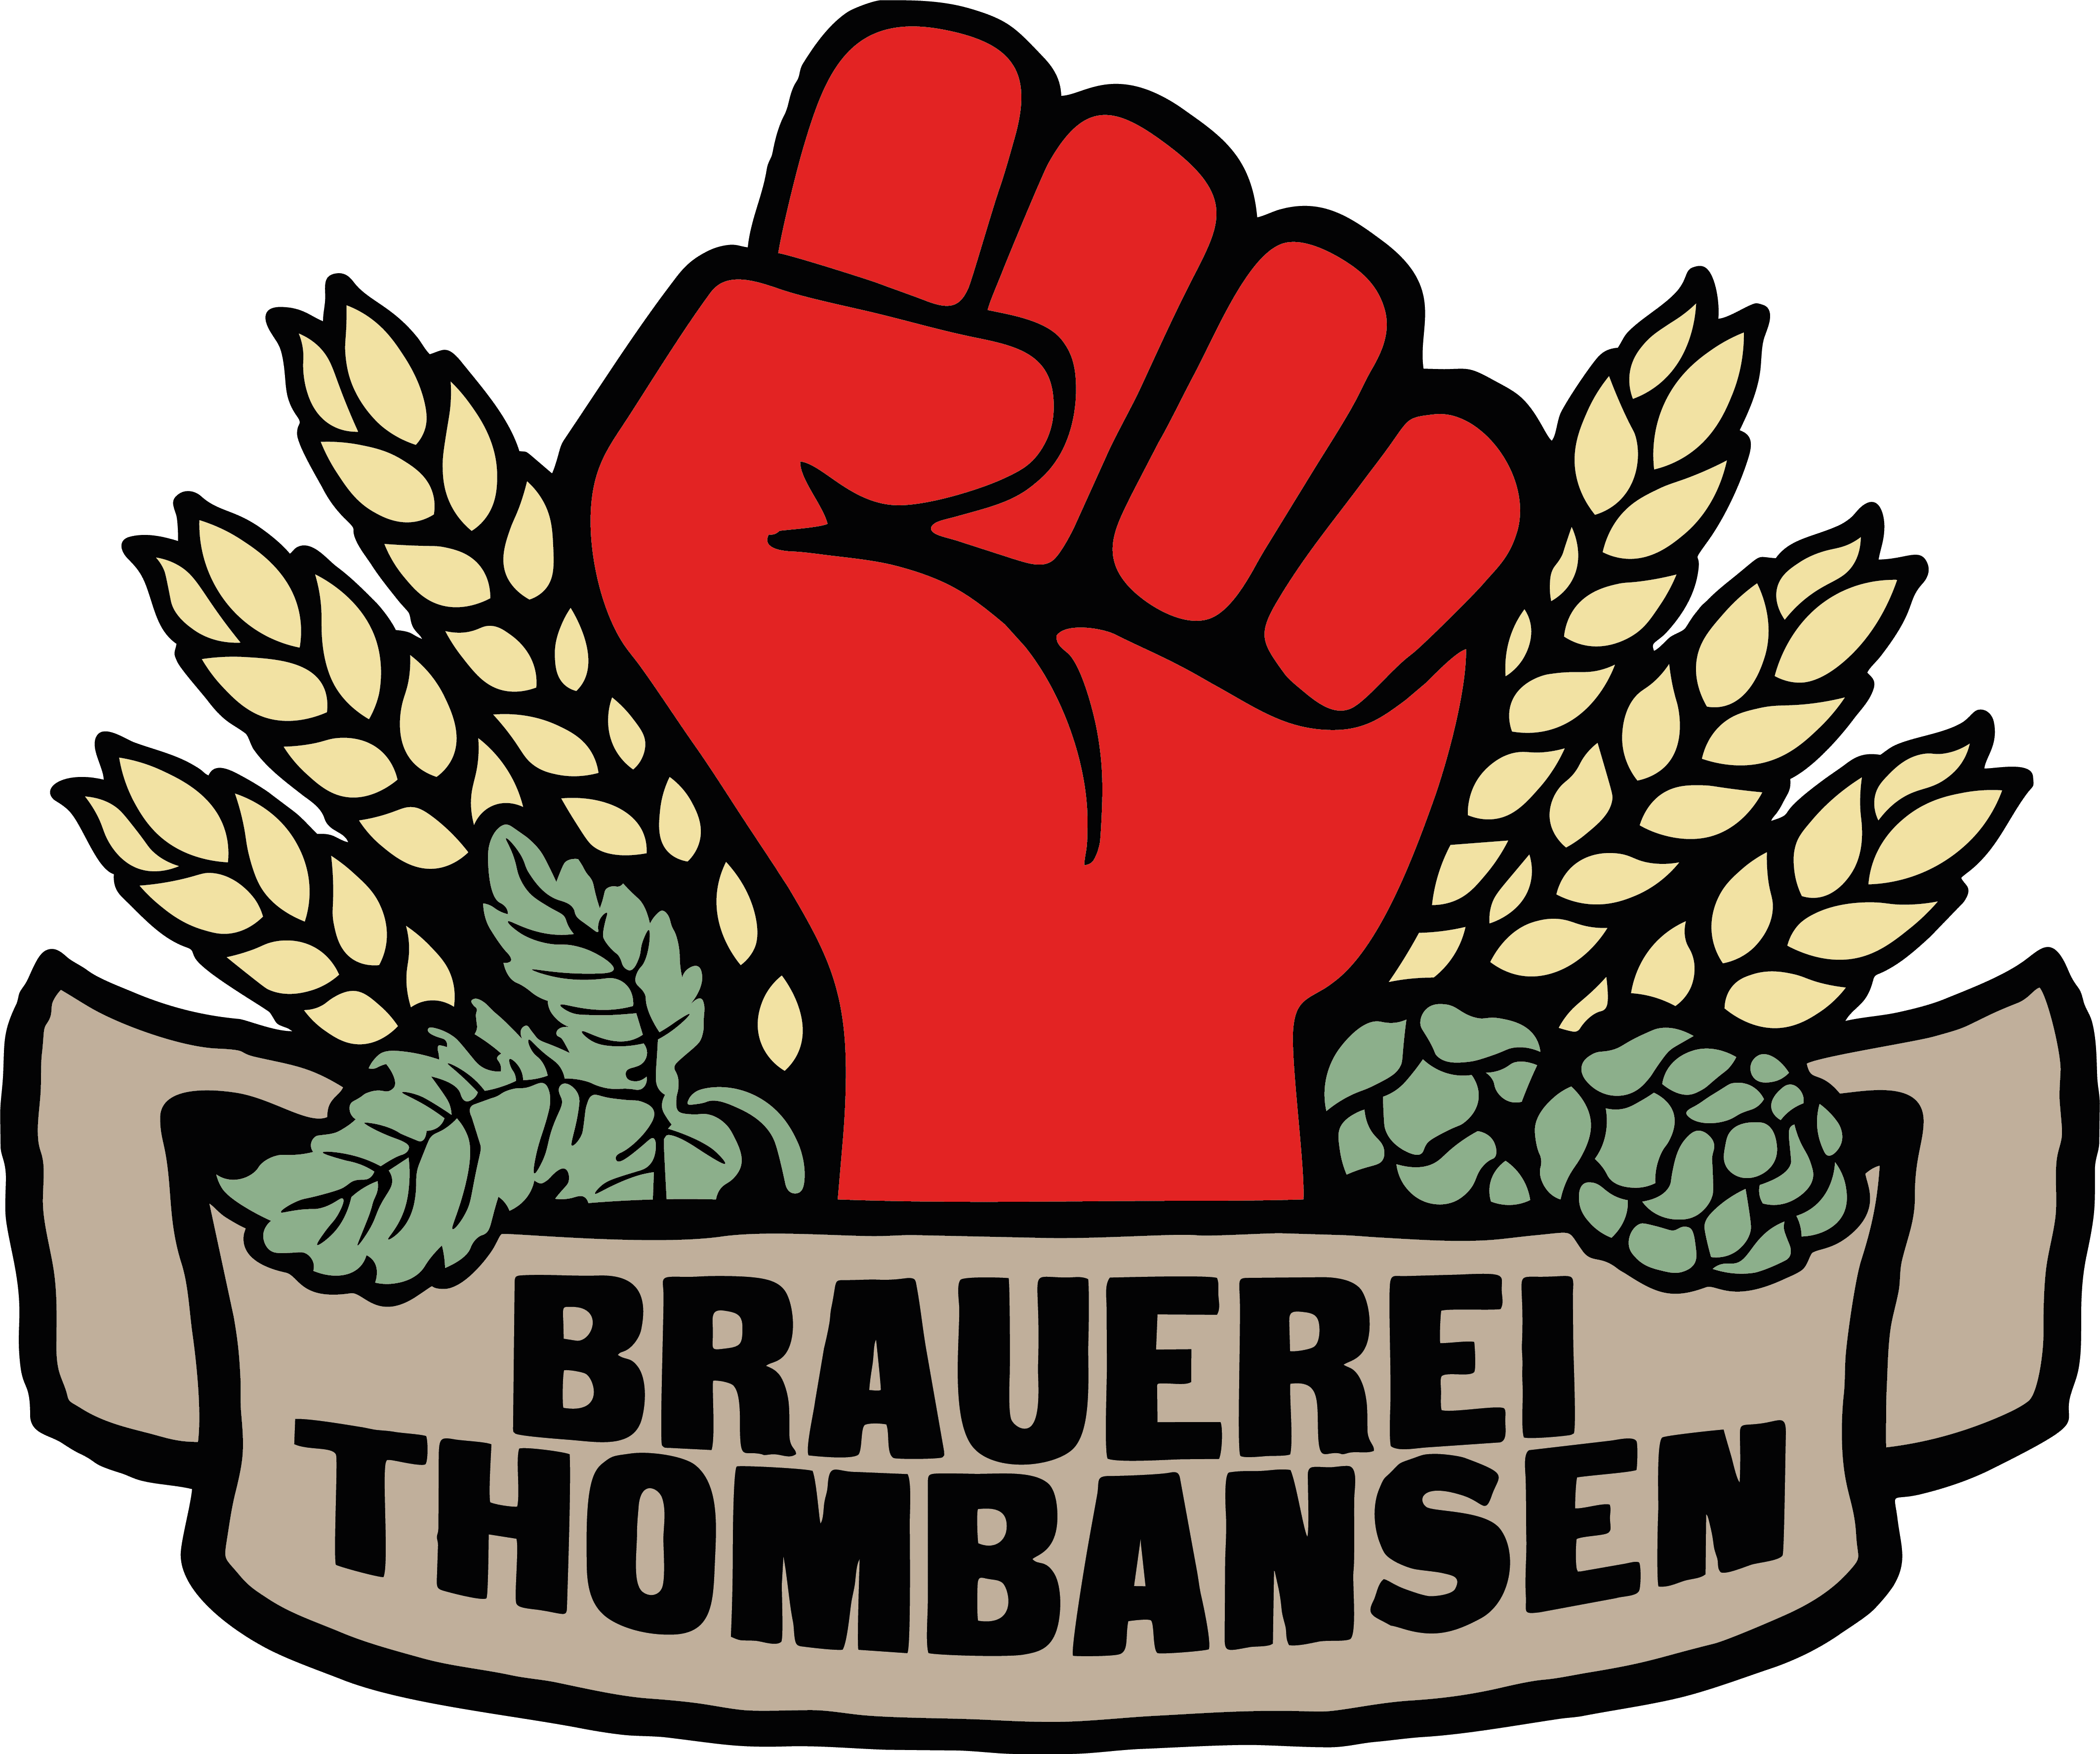 (c) Brauhaus-thombansen.de